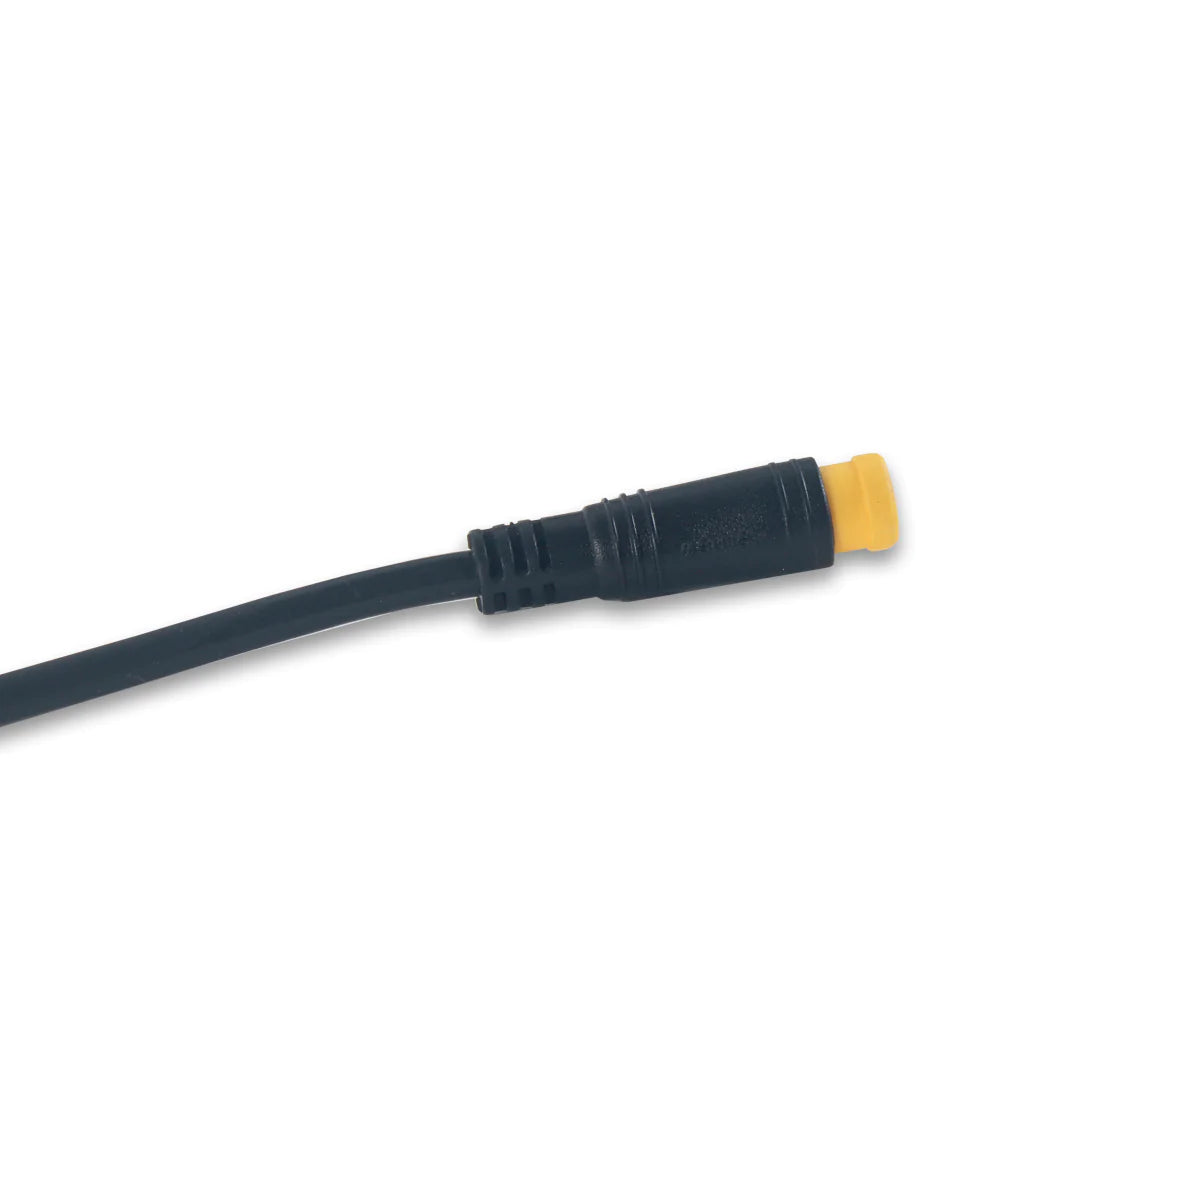 Nucular - Bafang / Higo Connector to Nucular Connector Cable